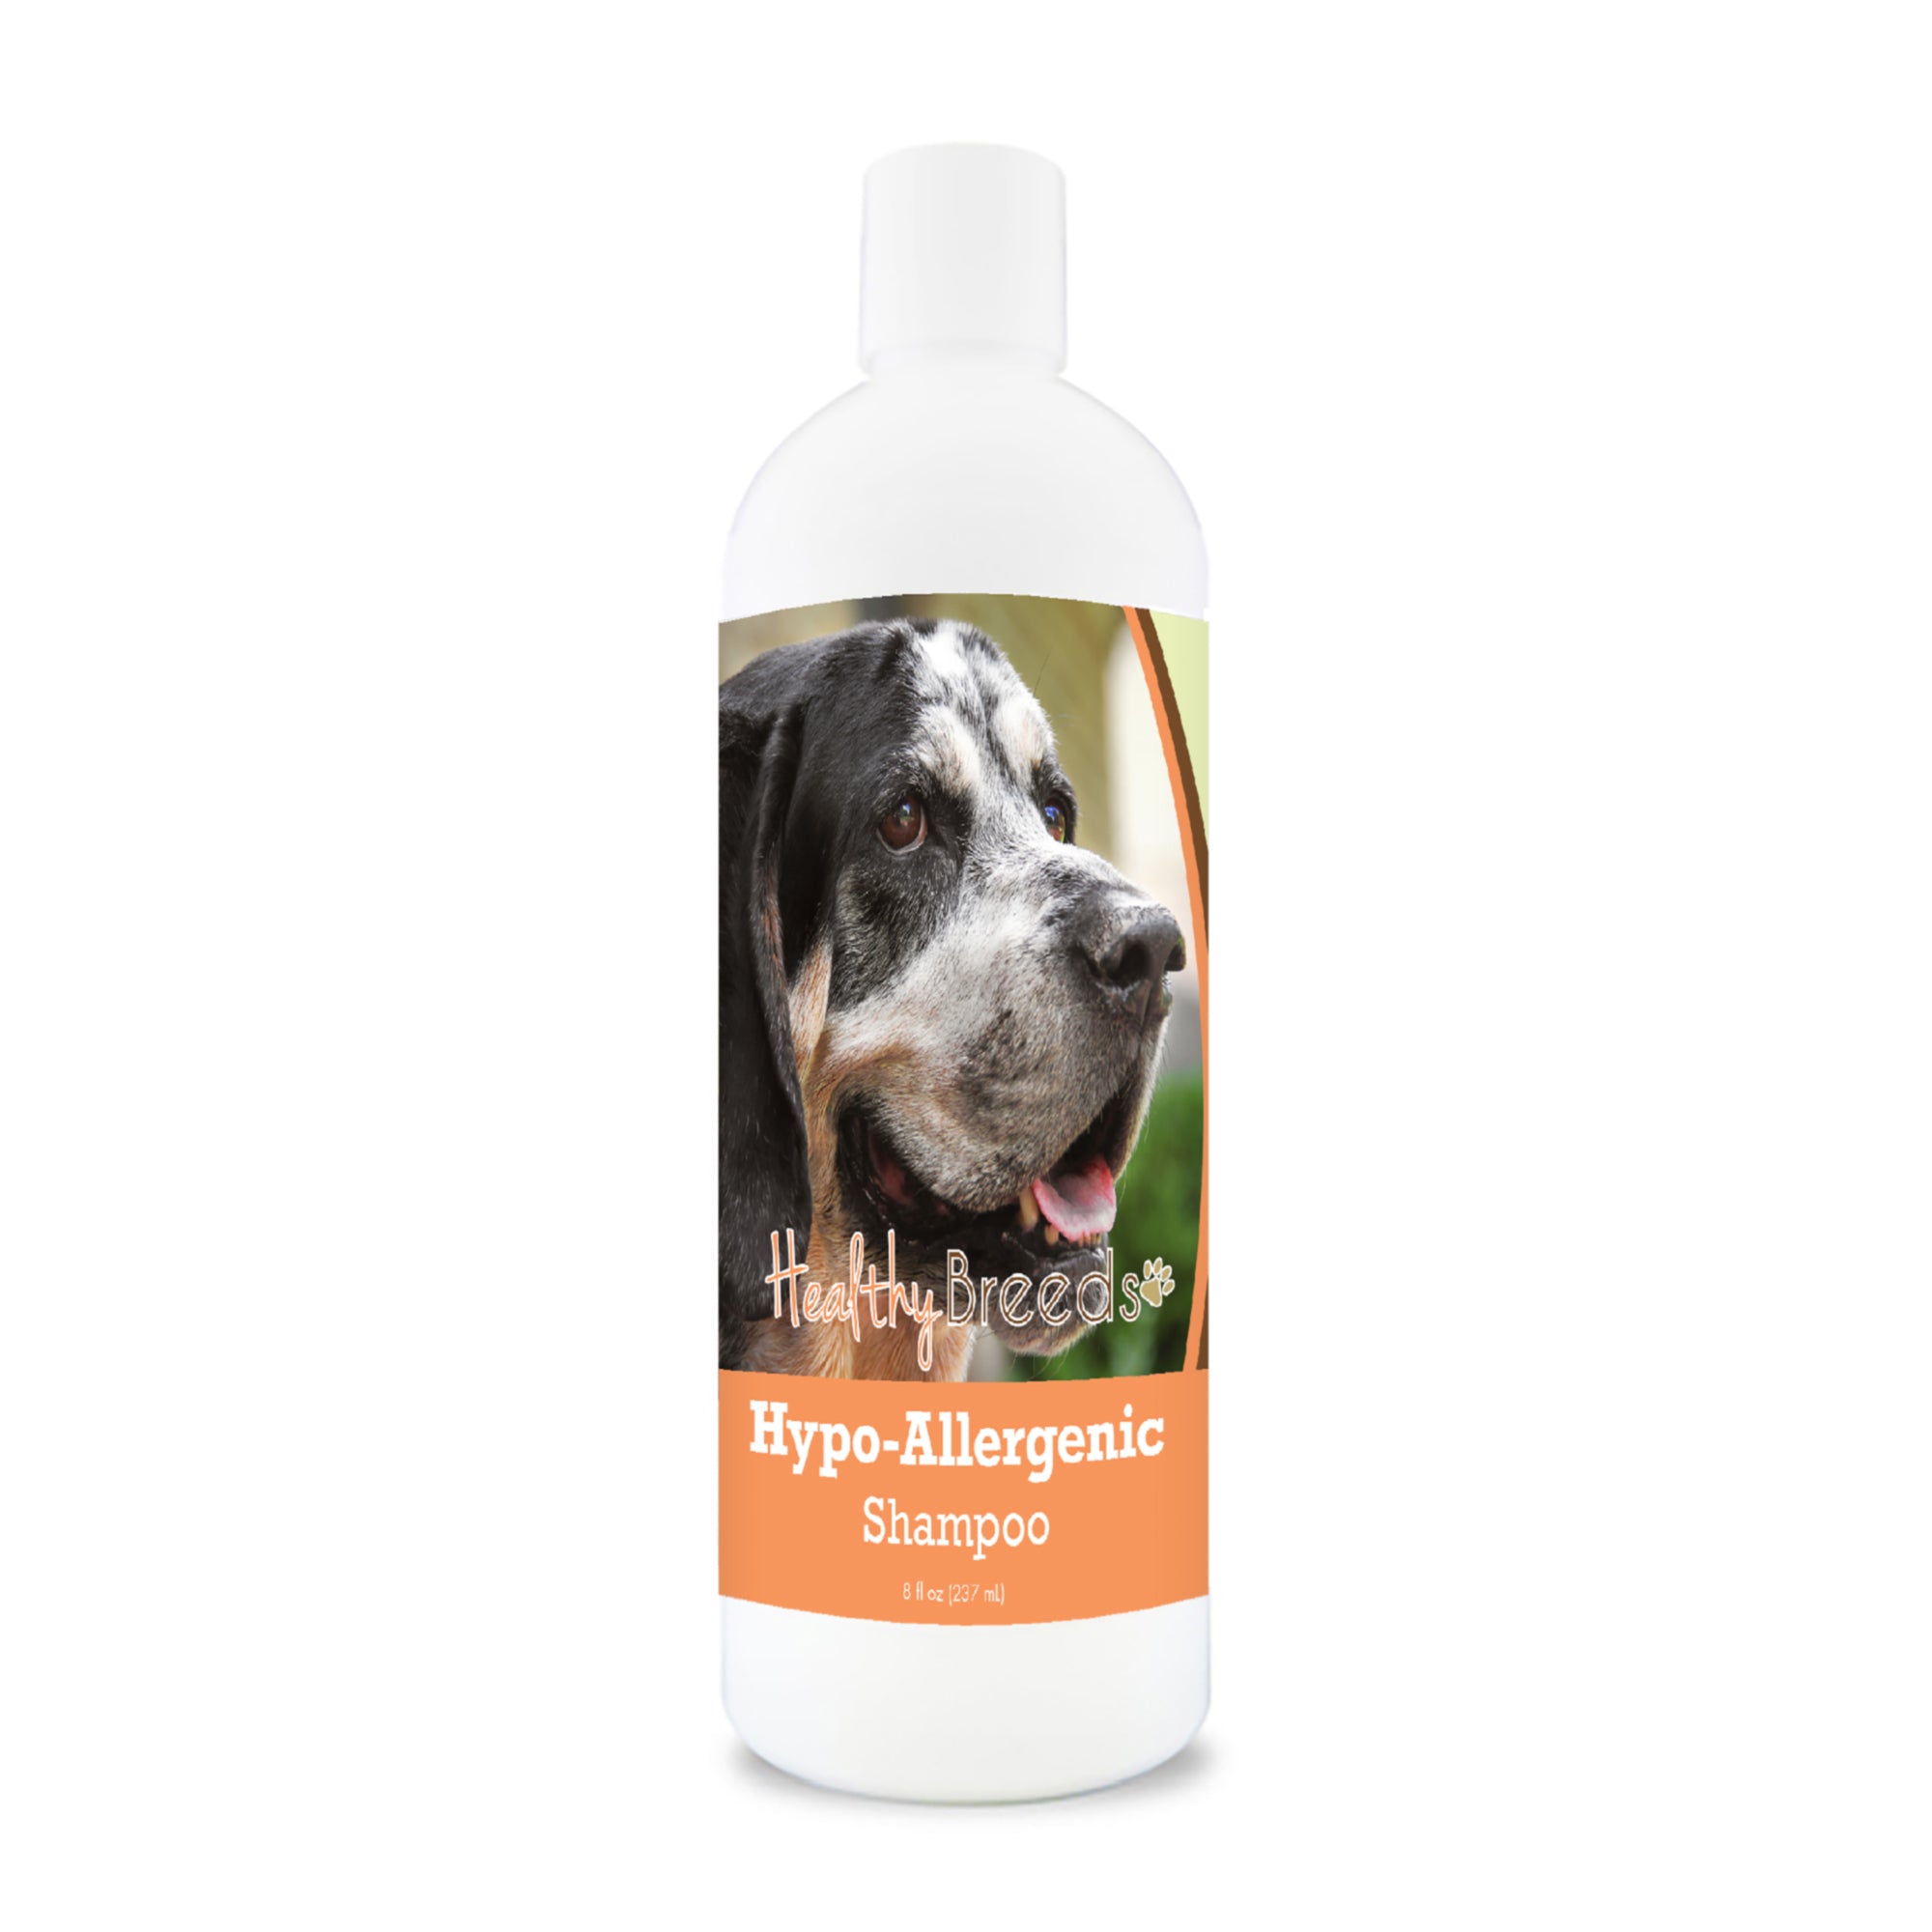 Bluetick Coonhound Hypo-Allergenic Shampoo 8 oz